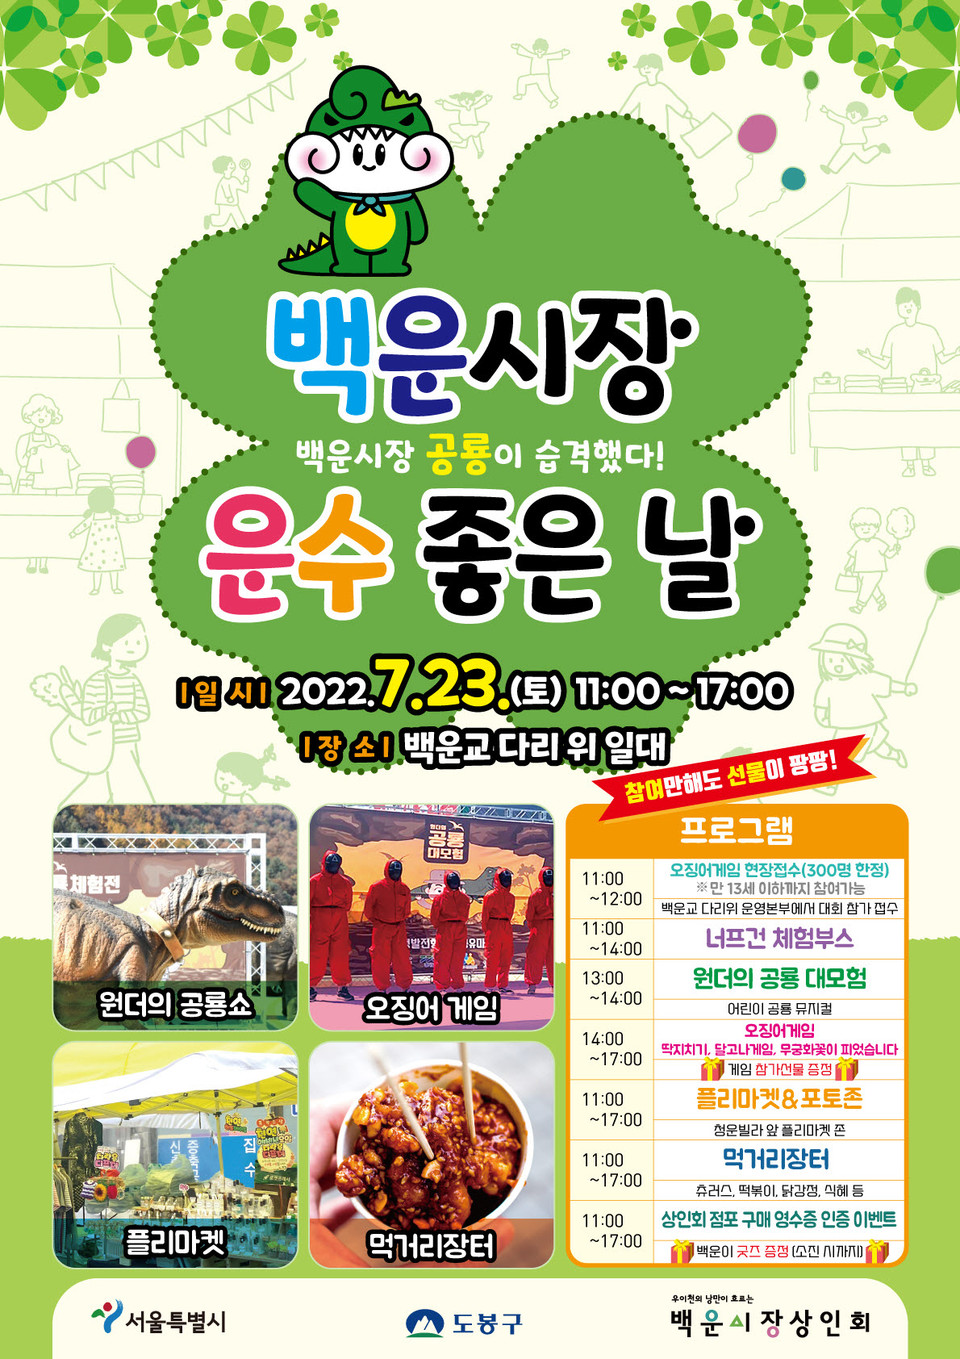 도봉구 「백운시장, 공룡이 습격했다! 운수좋은 날」 시장 축제 홍보 포스터